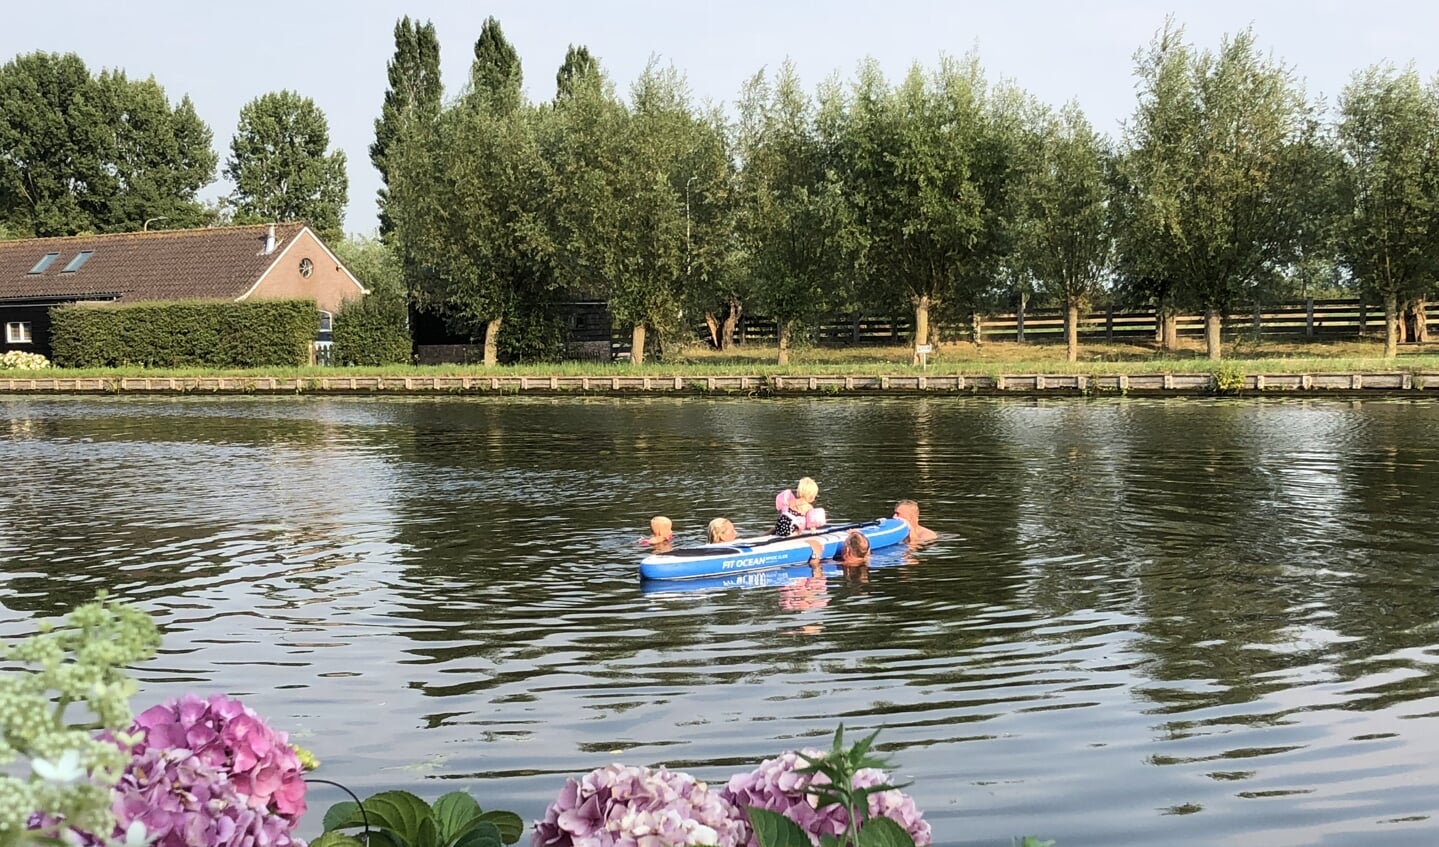 Plezier met het gezin in de Oude Rijn. Beeld: Annemiek Oskam